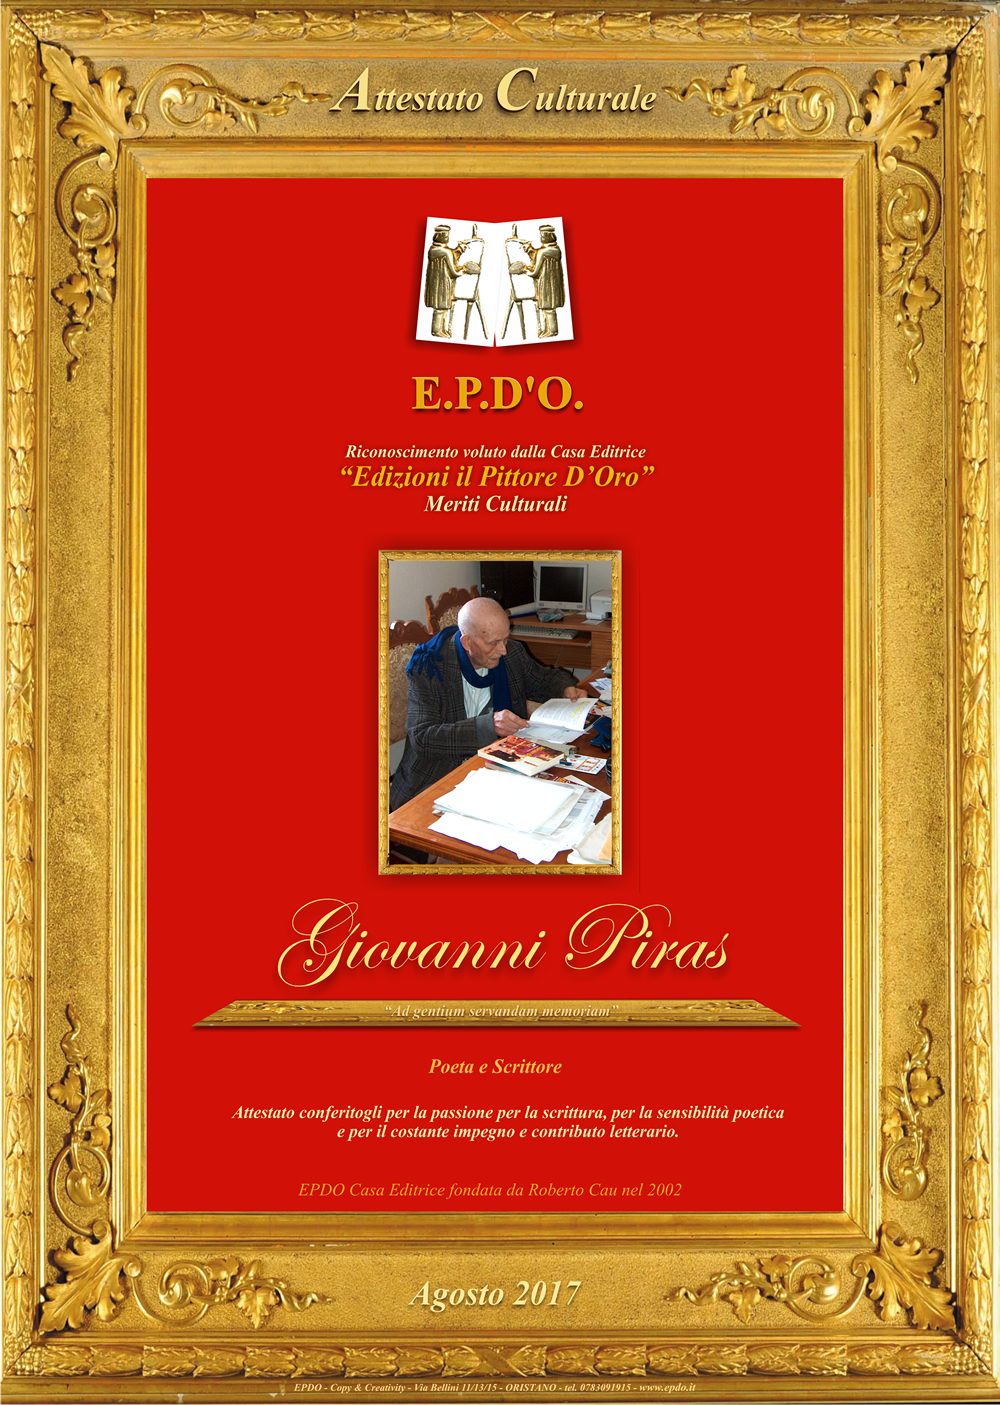 EPDO - Attestato Culturale Giovanni Piras